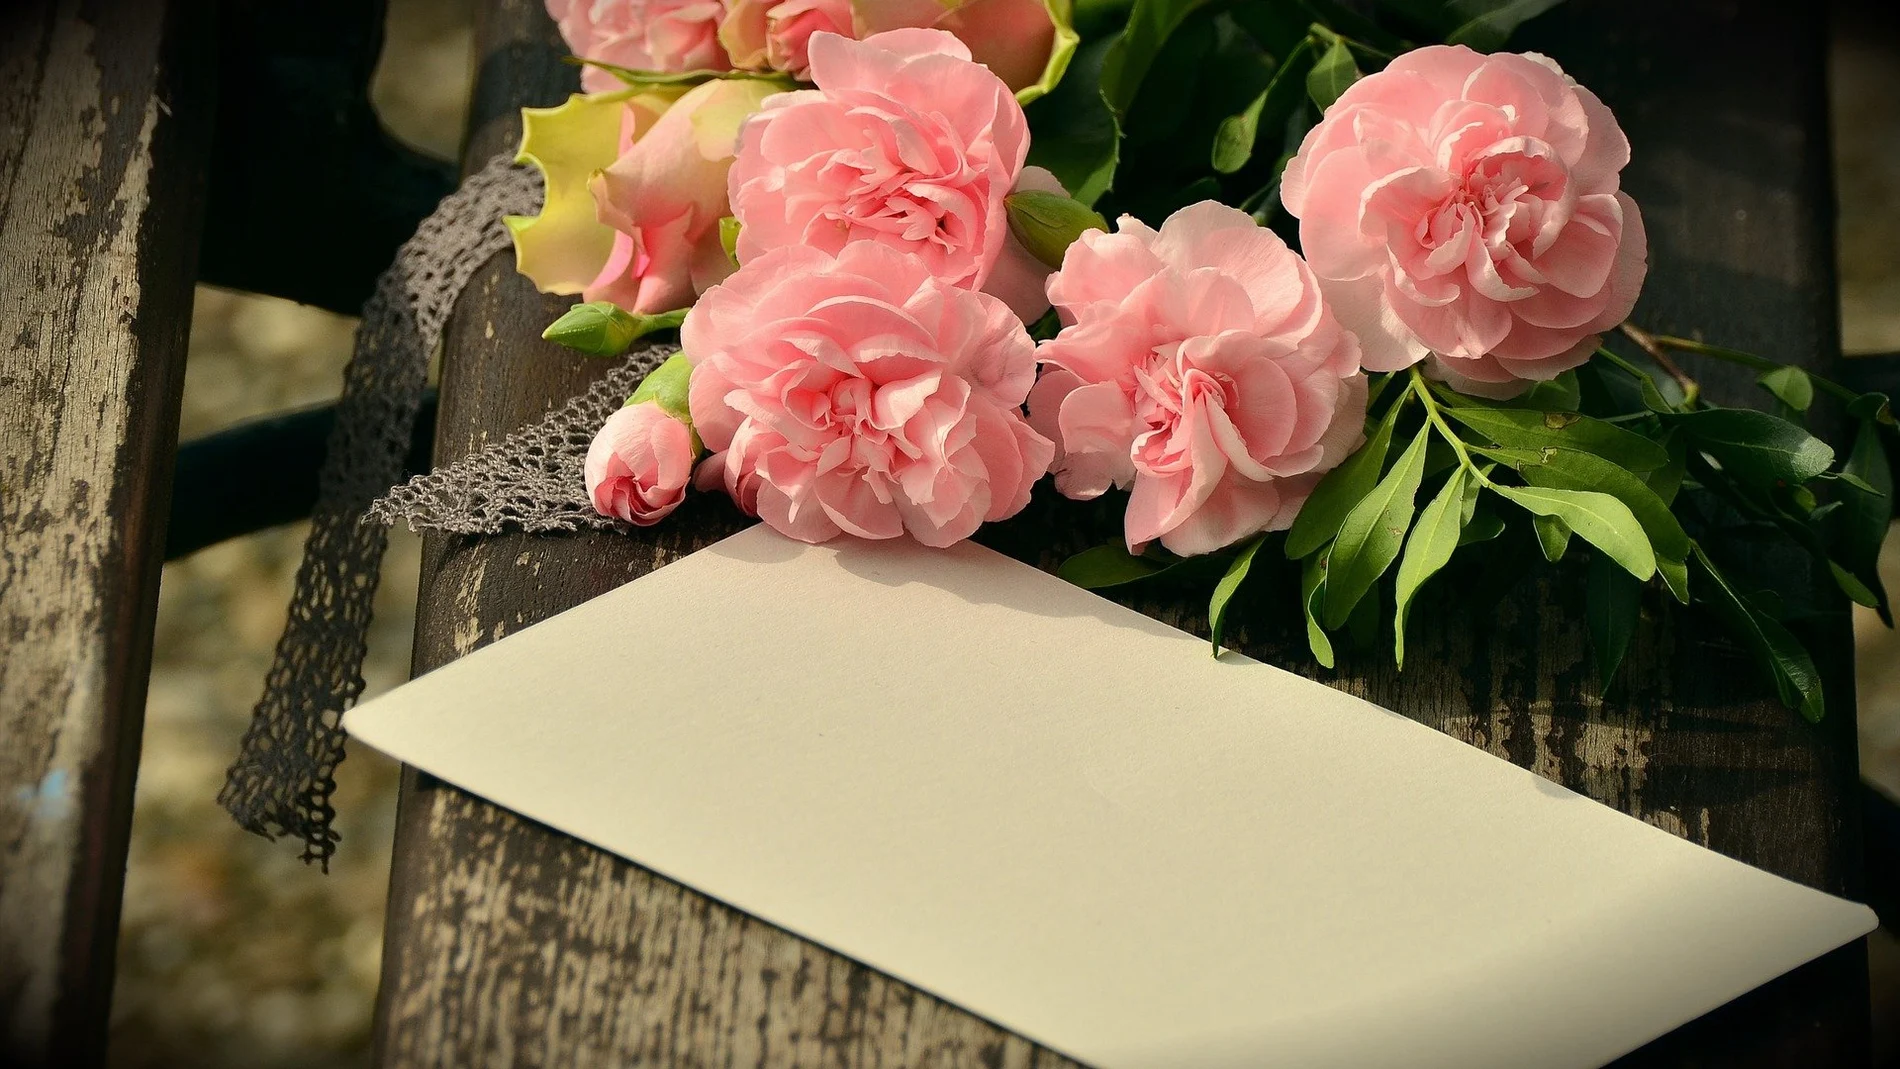  9 ideas de regalos para el Día de la Madre a domicilio: Enviar flores, desayunos y otros regalos